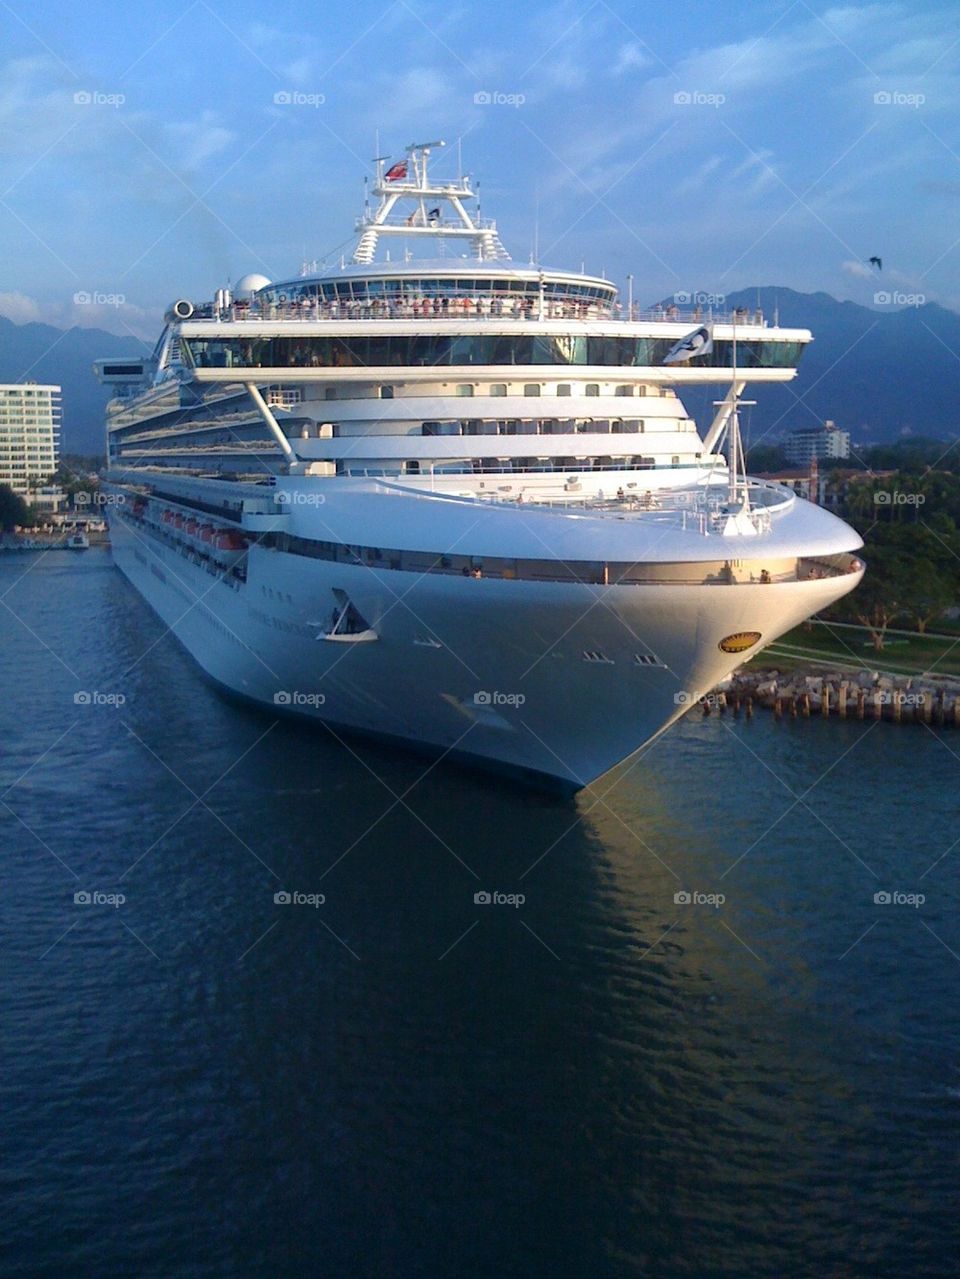 Cruise ship in Mexico